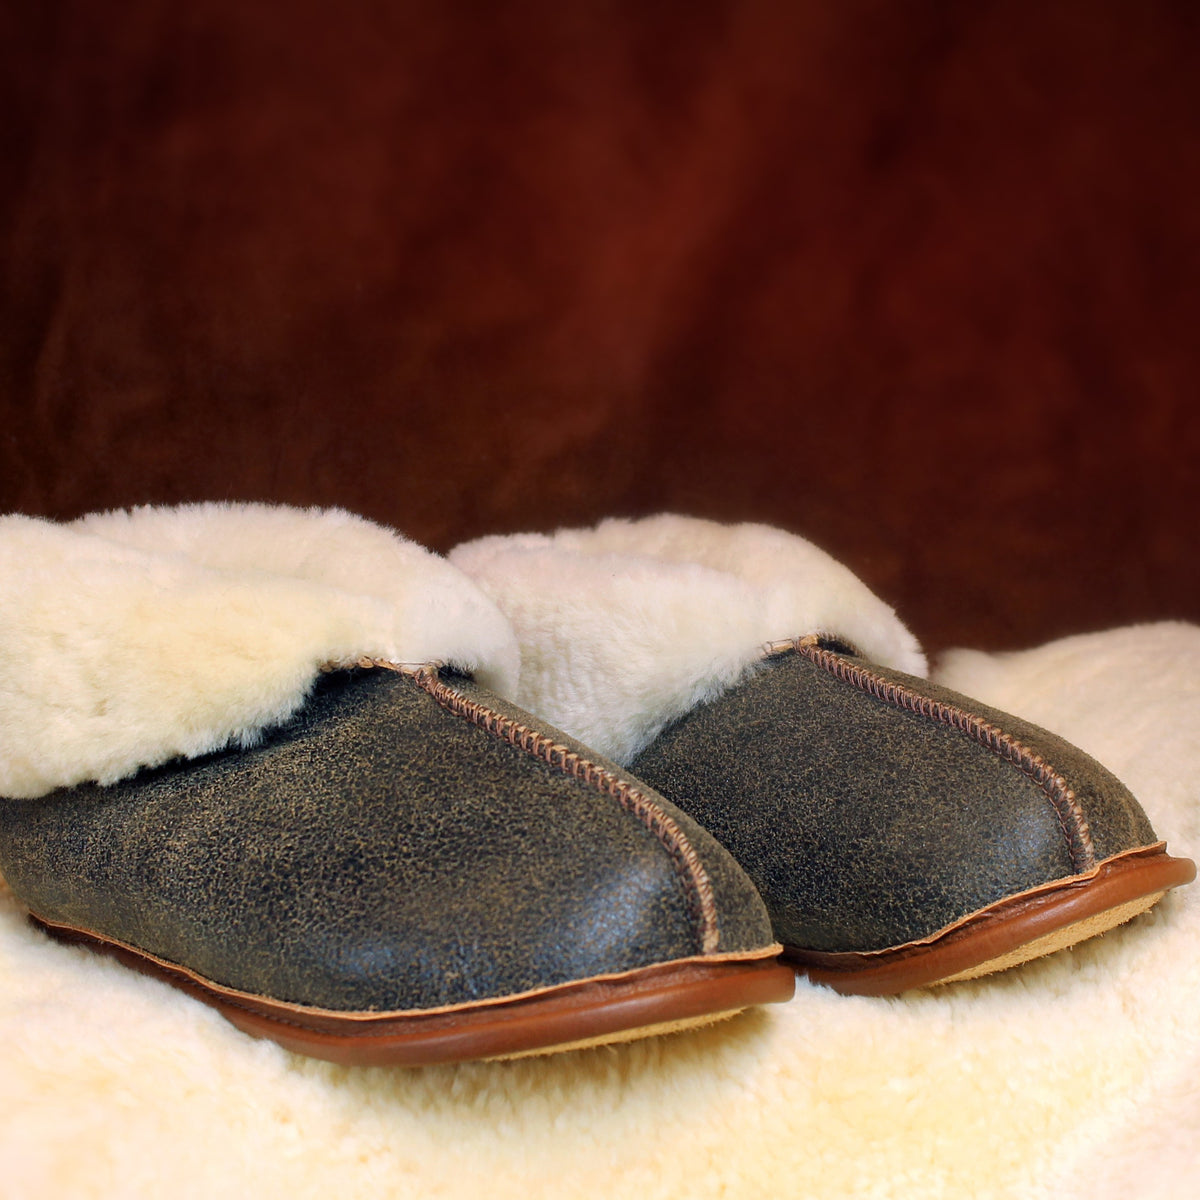 sheep's skin slippers